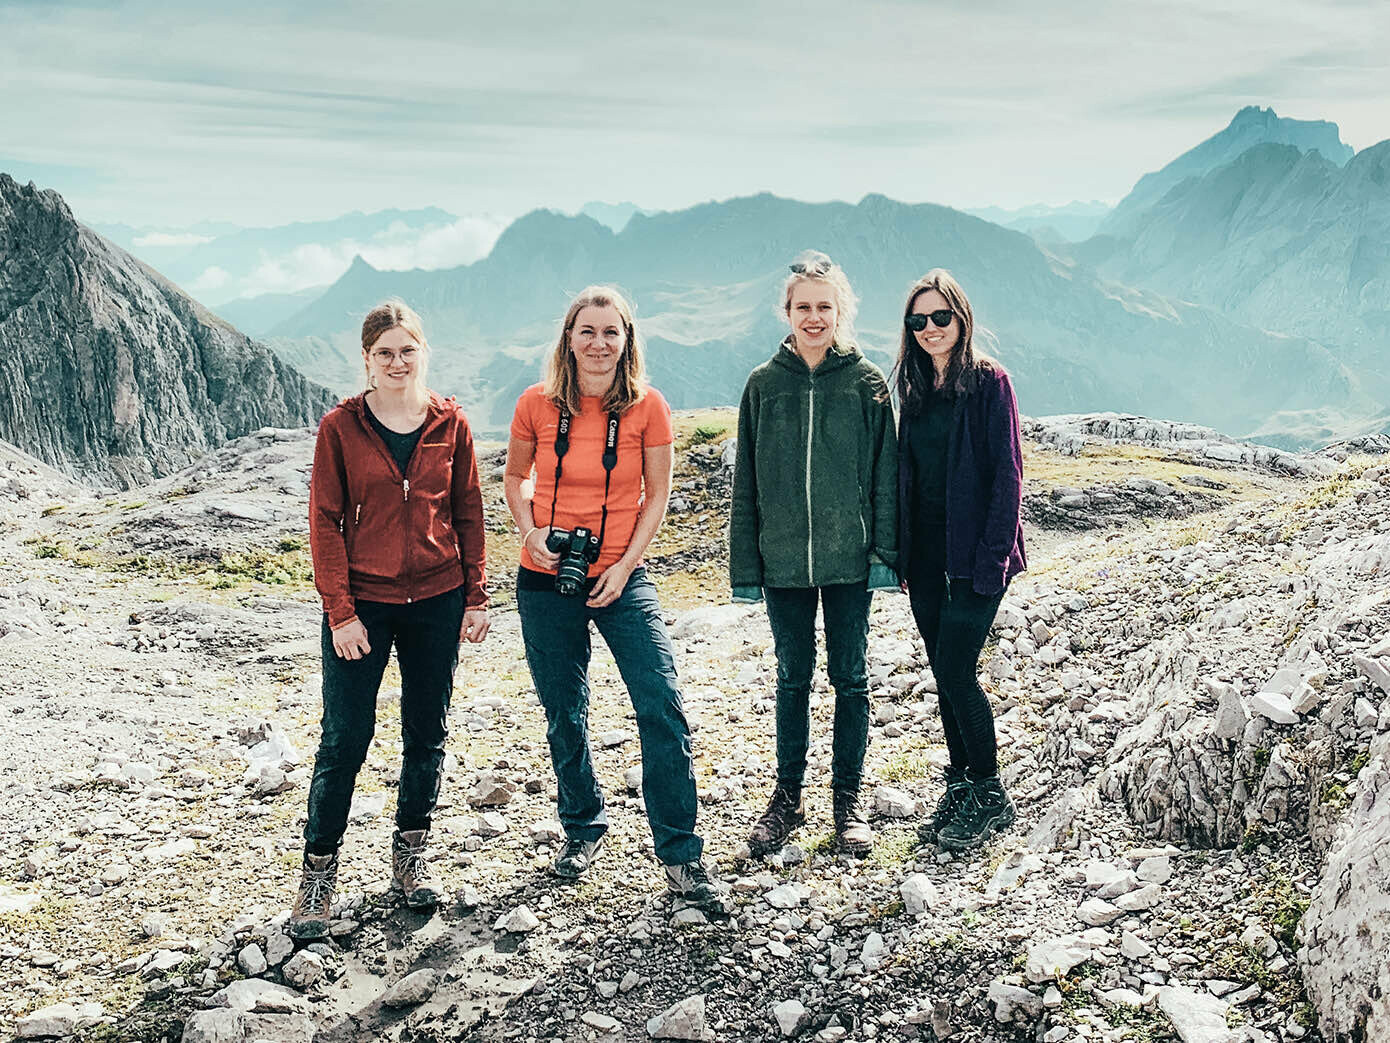 Auf diesen Gruppenbild sind 4 Frauen des Projektes von der Universität Liechtenstein zu sehen.